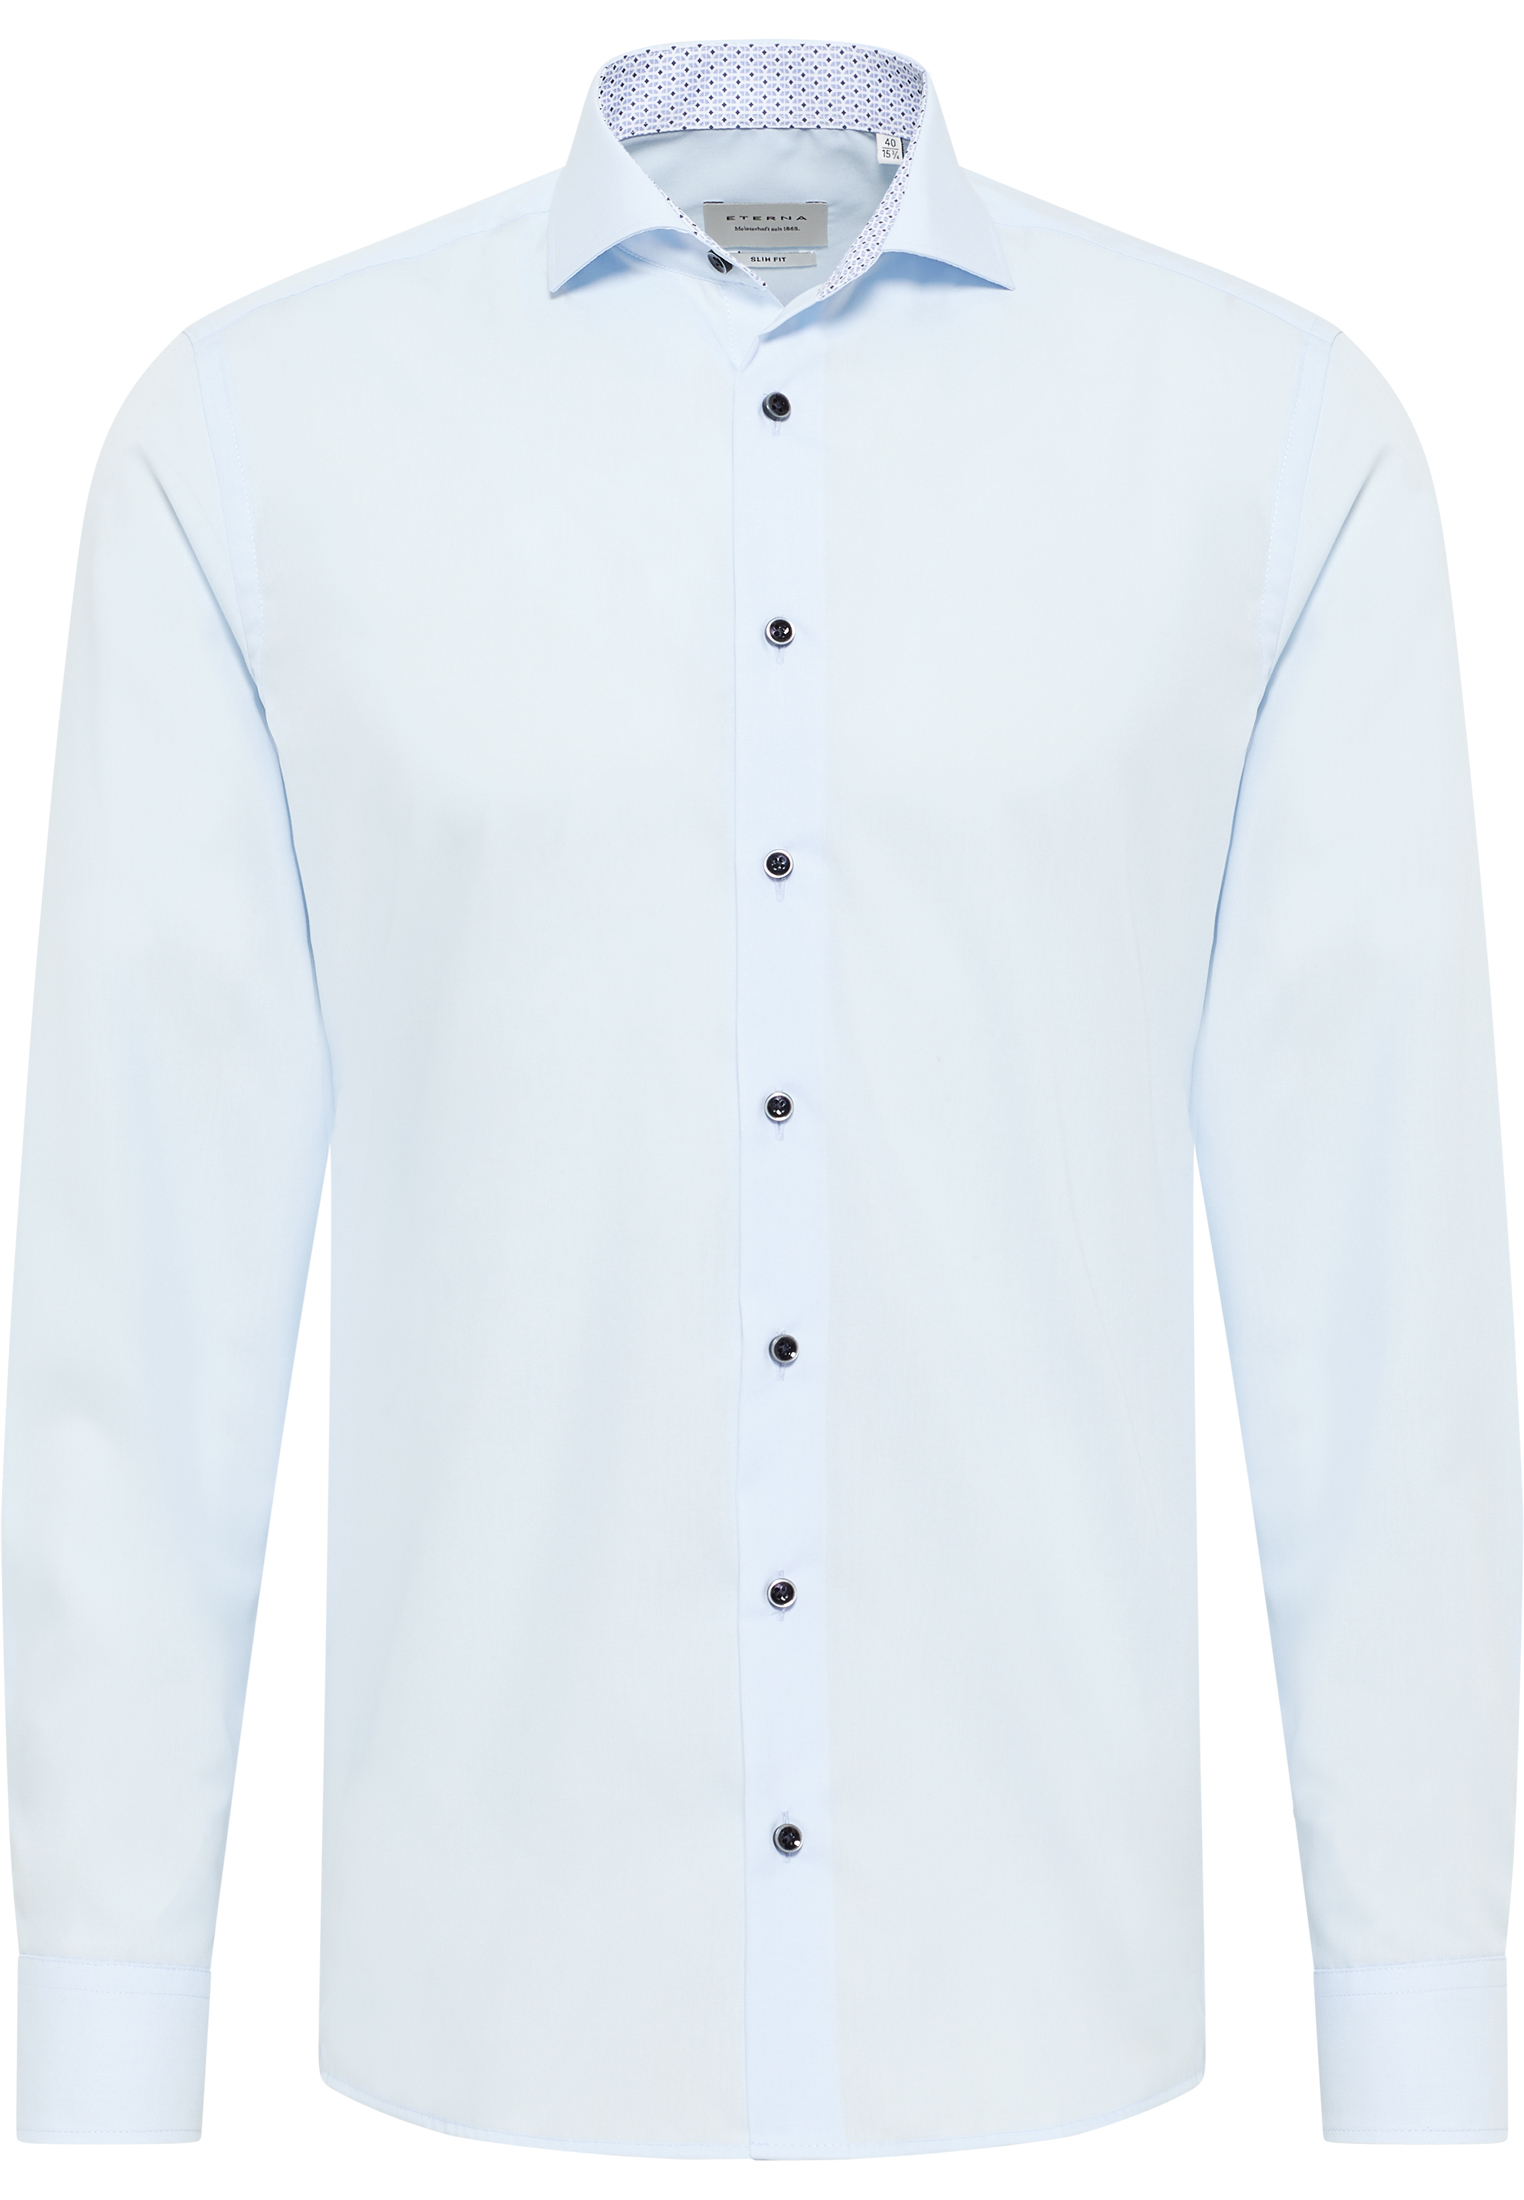 SLIM FIT Original Shirt in himmelblau unifarben